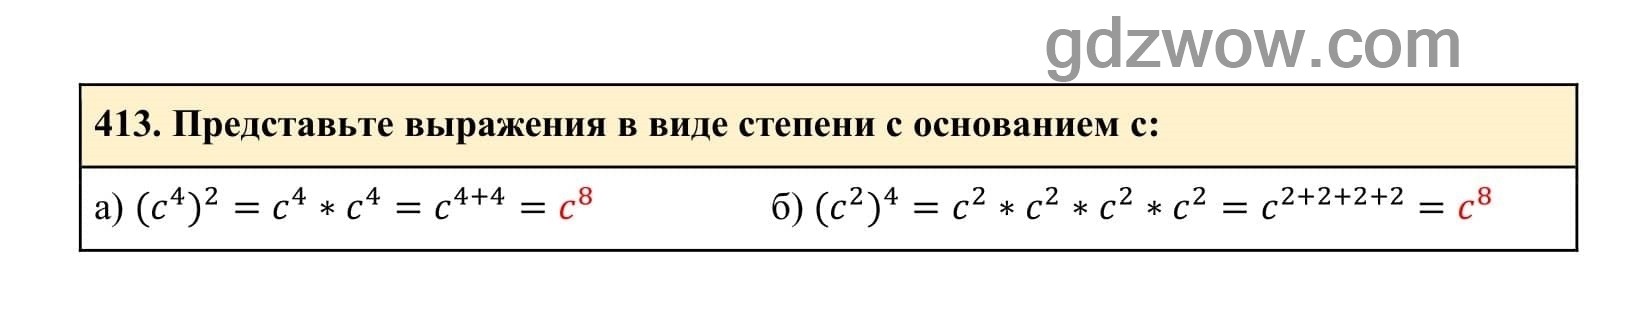 Упражнение 413 - ГДЗ по Алгебре 7 класс Учебник Макарычев (решебник) - GDZwow